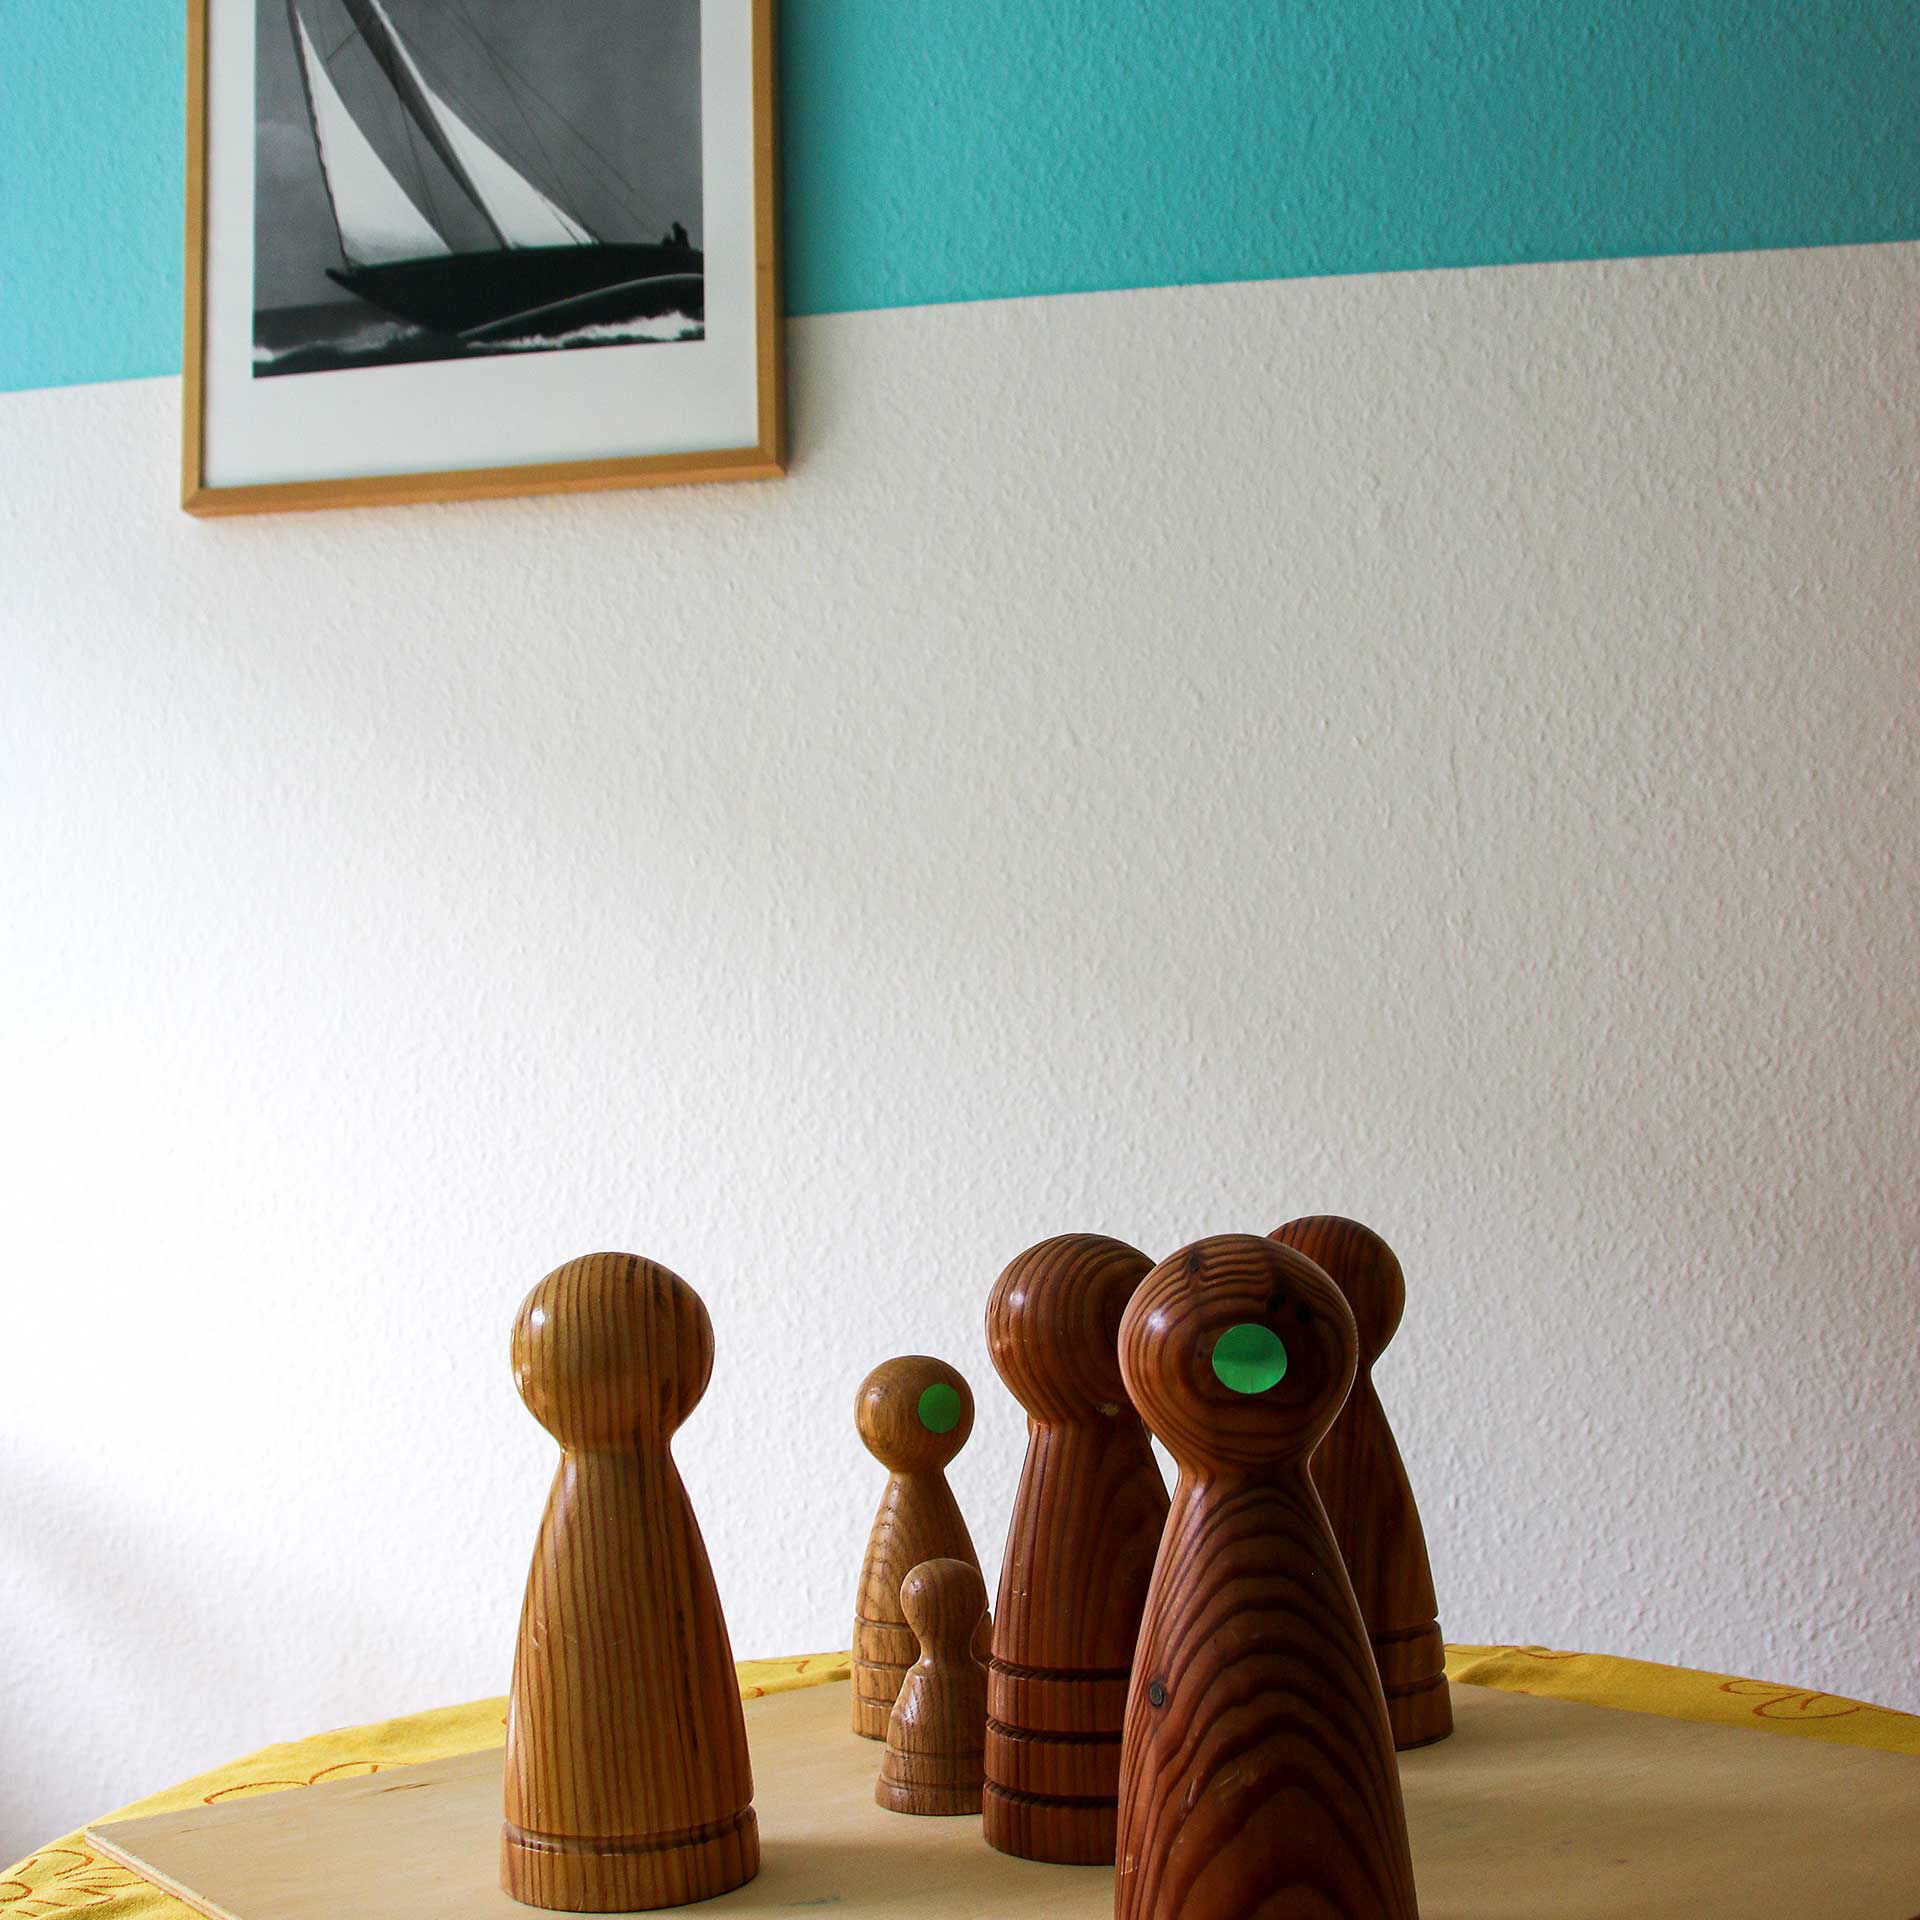 6 Holzfiguren zur Personenaufstellung stehen auf einem Holzbrett auf dem Tisch.